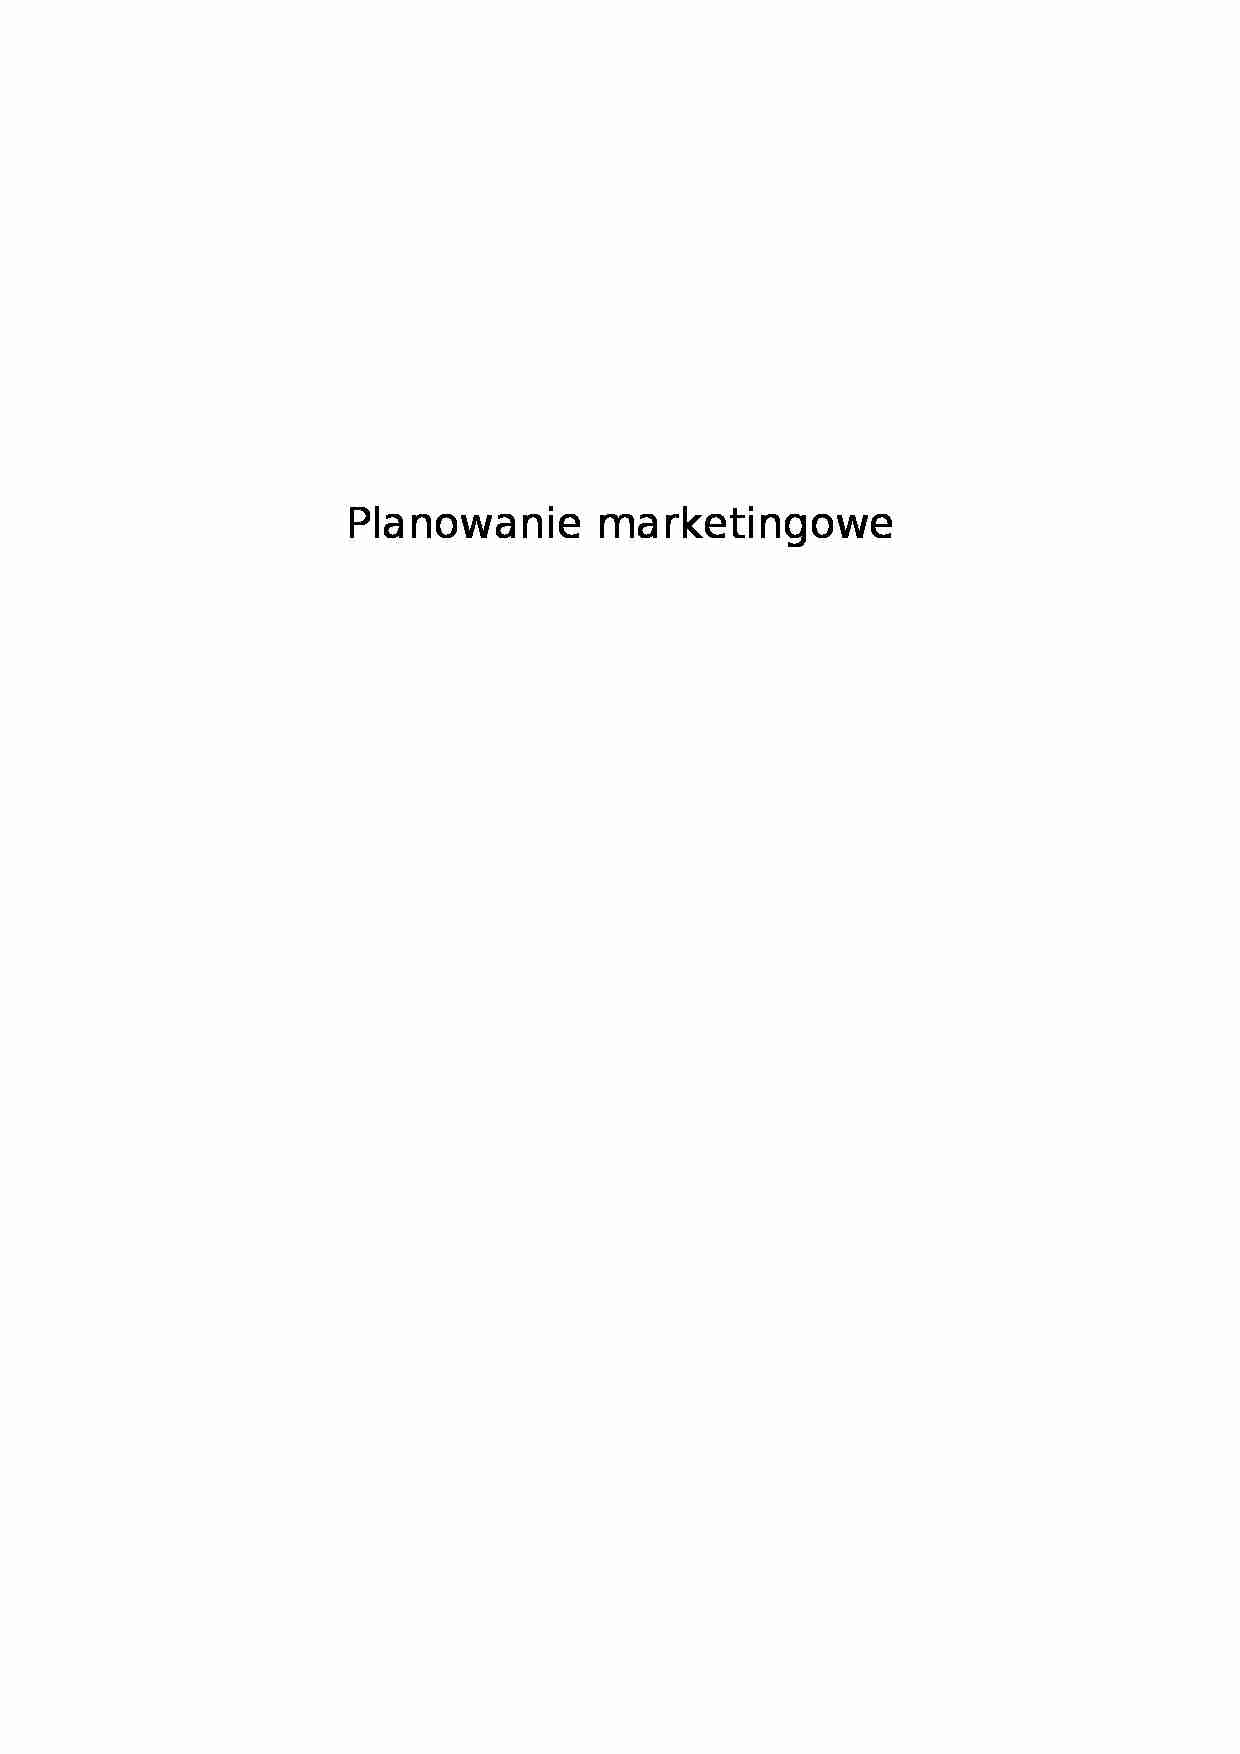 Planowanie marketingowe - strona 1